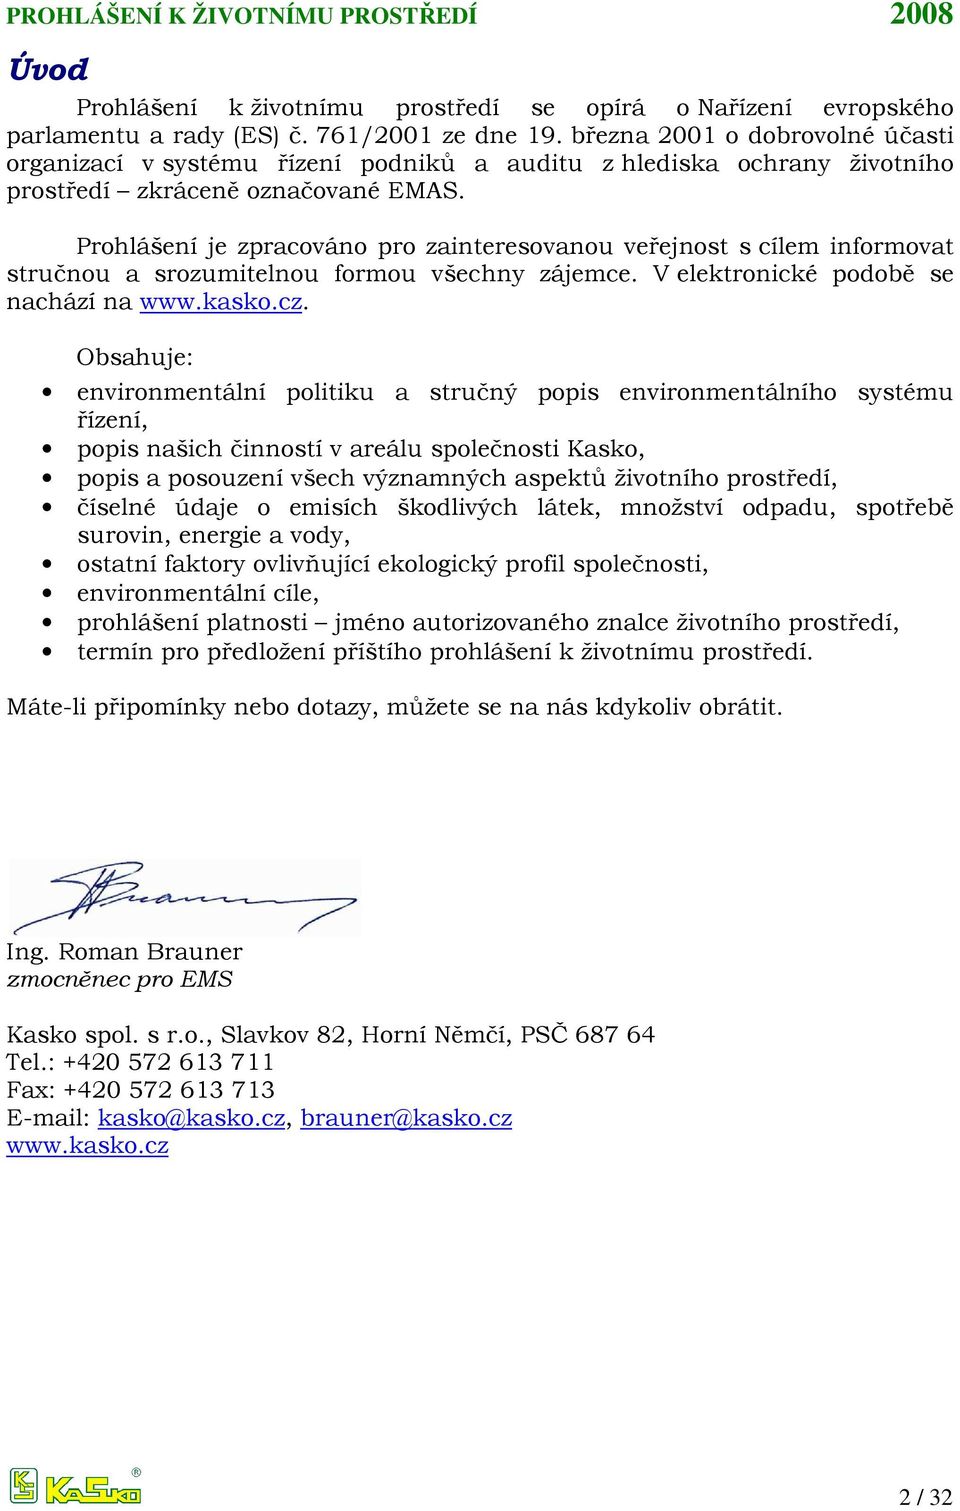 Prohlášení je zpracováno pro zainteresovanou veřejnost s cílem informovat stručnou a srozumitelnou formou všechny zájemce. V elektronické podobě se nachází na www.kasko.cz.